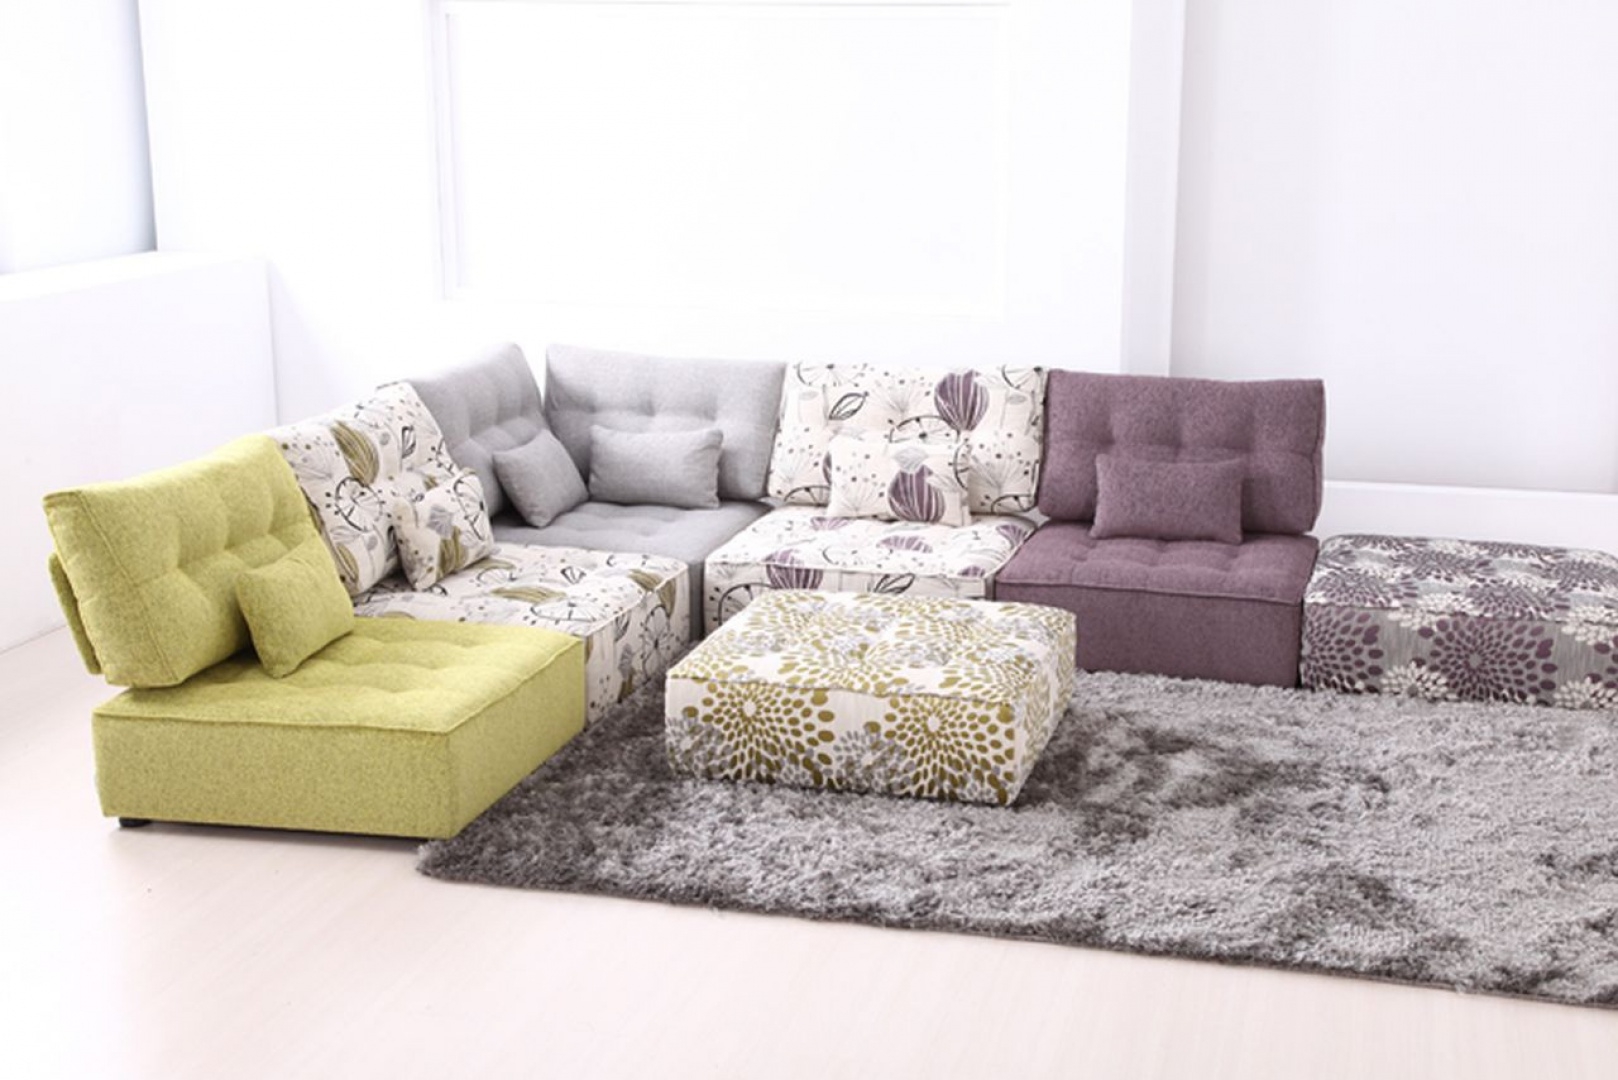 Small modular sectional sofa